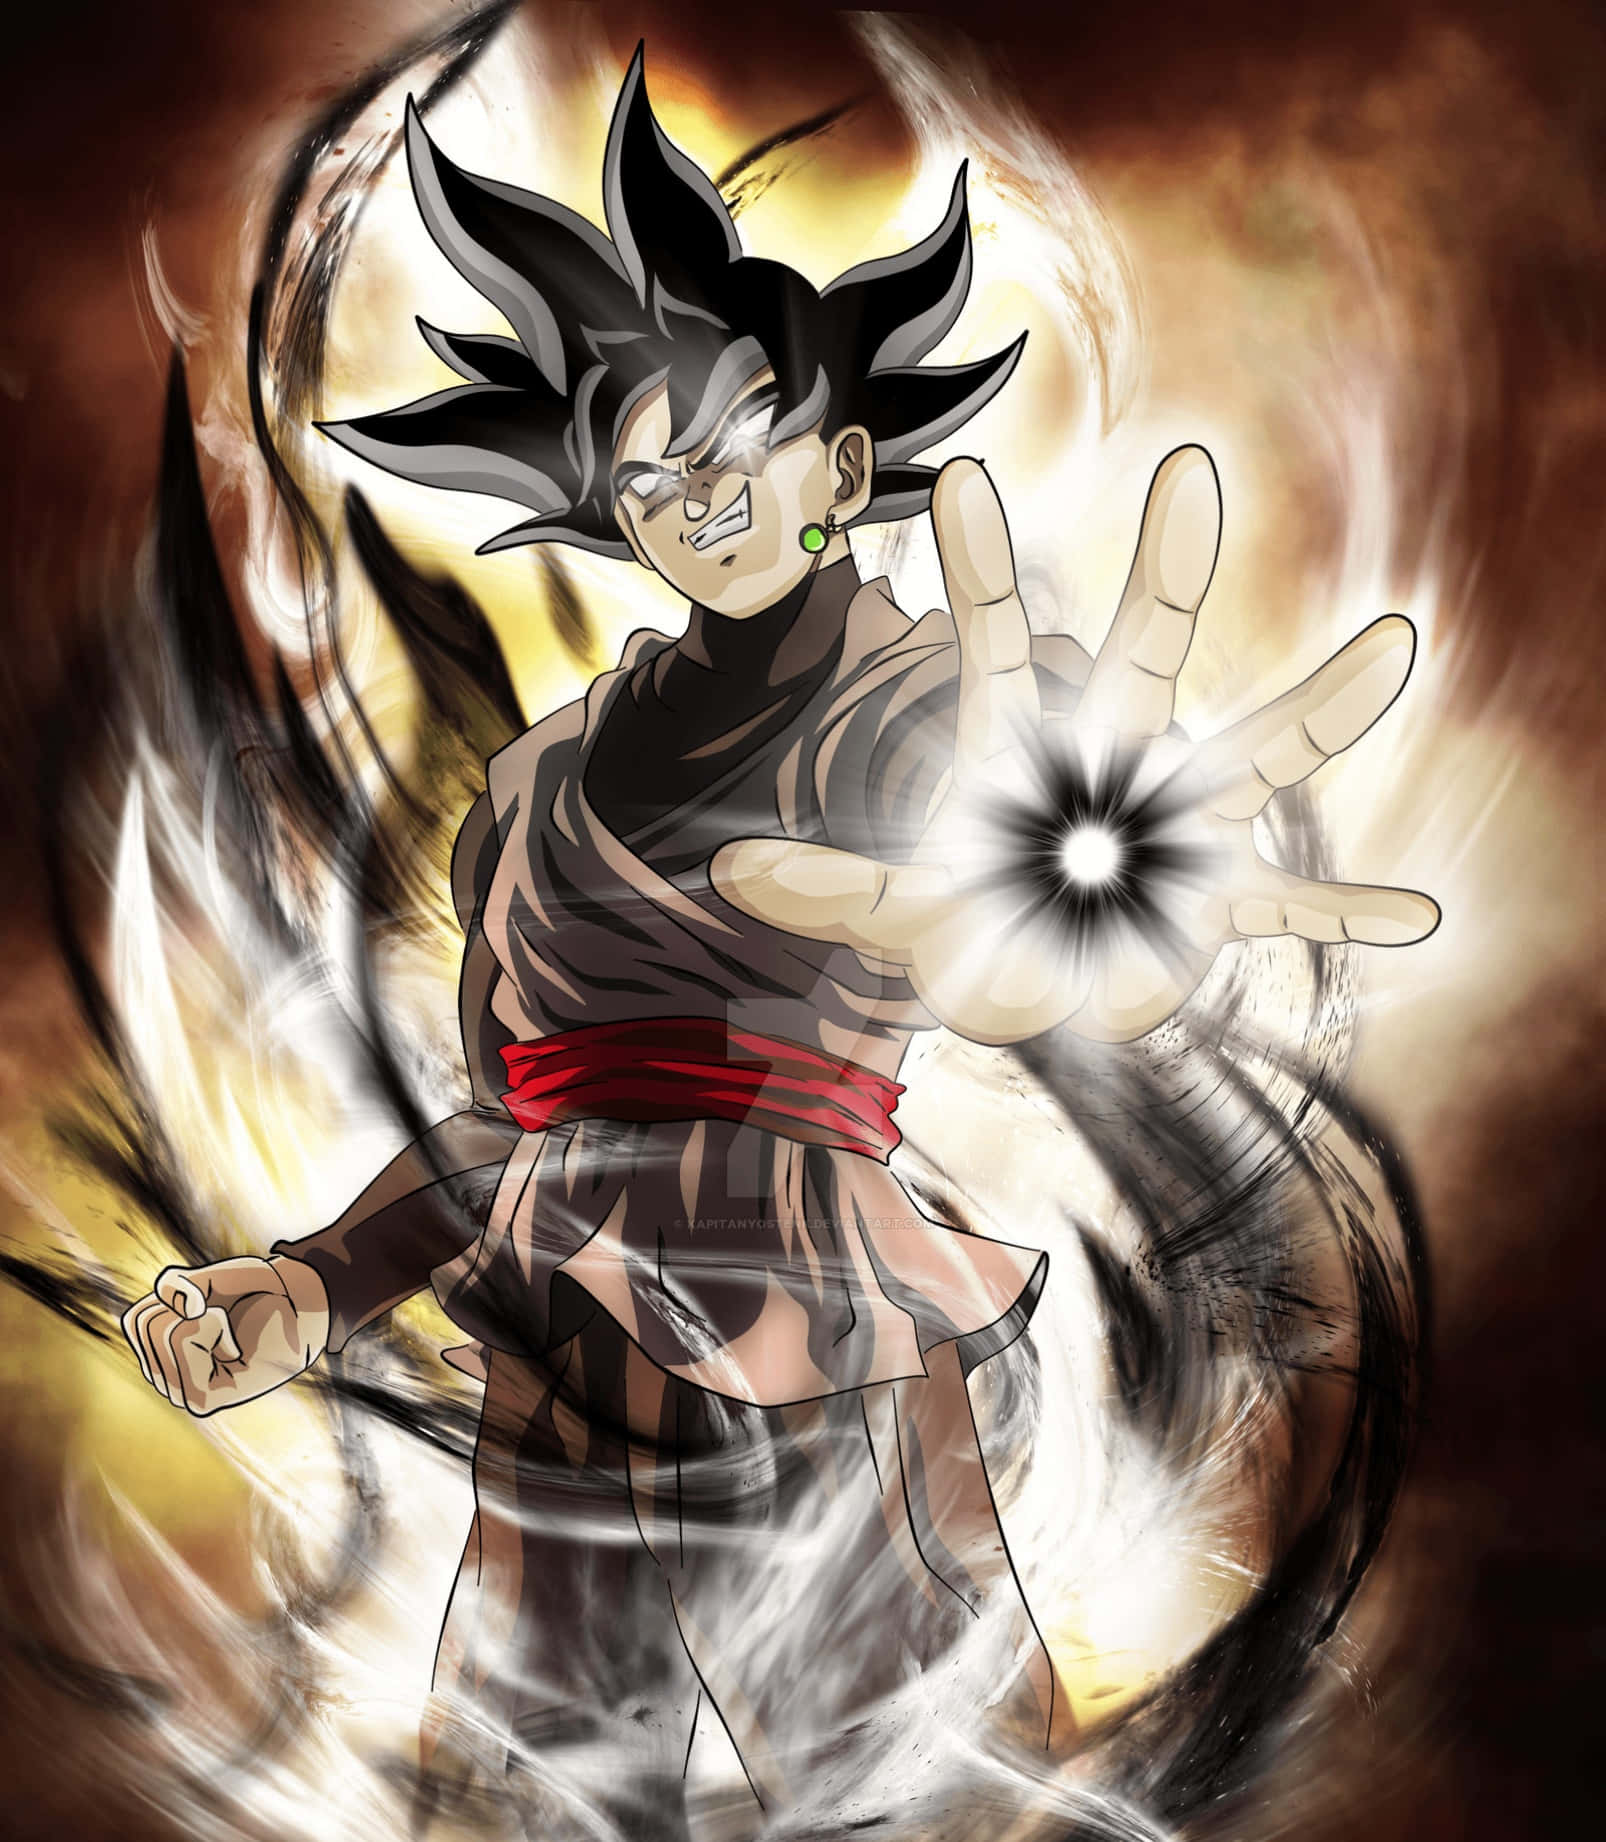 Gokublack, Den Super Saiyan Guden Från Dragon Ball Super.